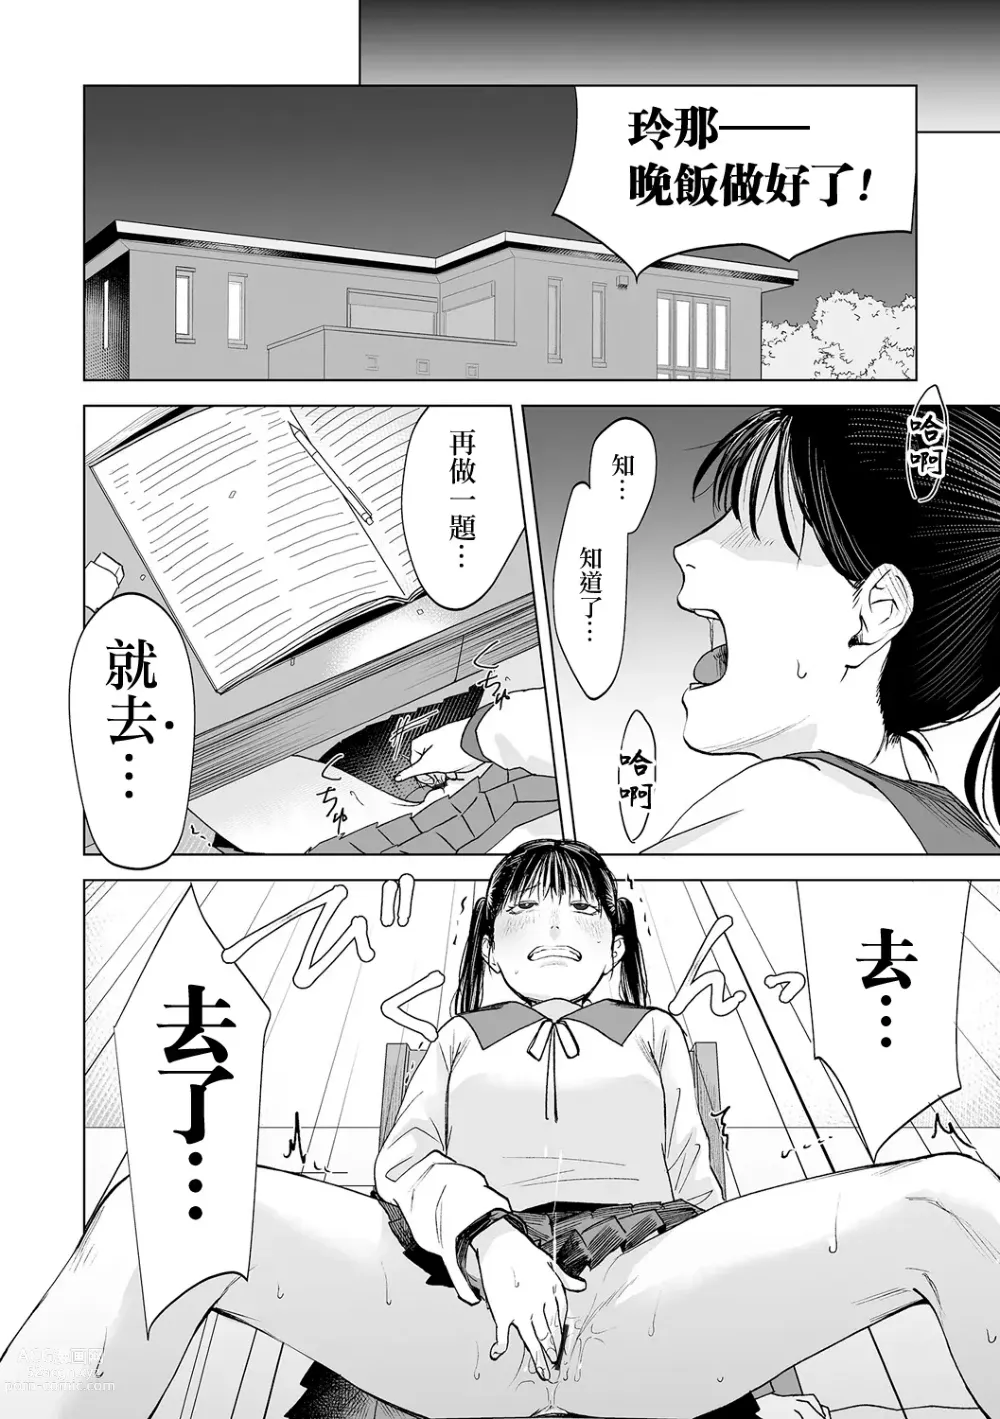 Page 8 of manga Haru wa Aokunai Ch. 1